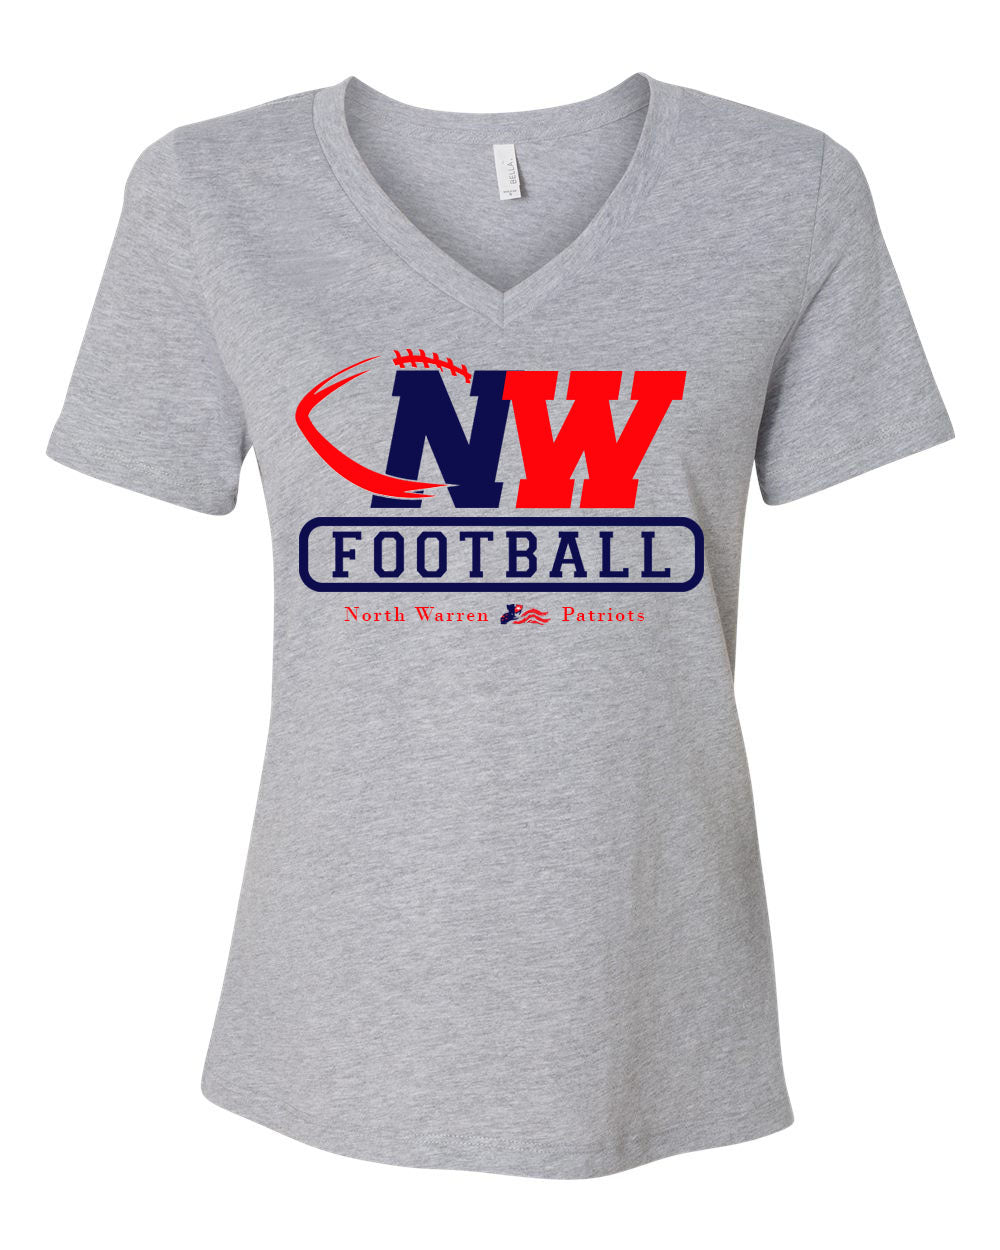 NW Football Design 3 V-neck T-shirt